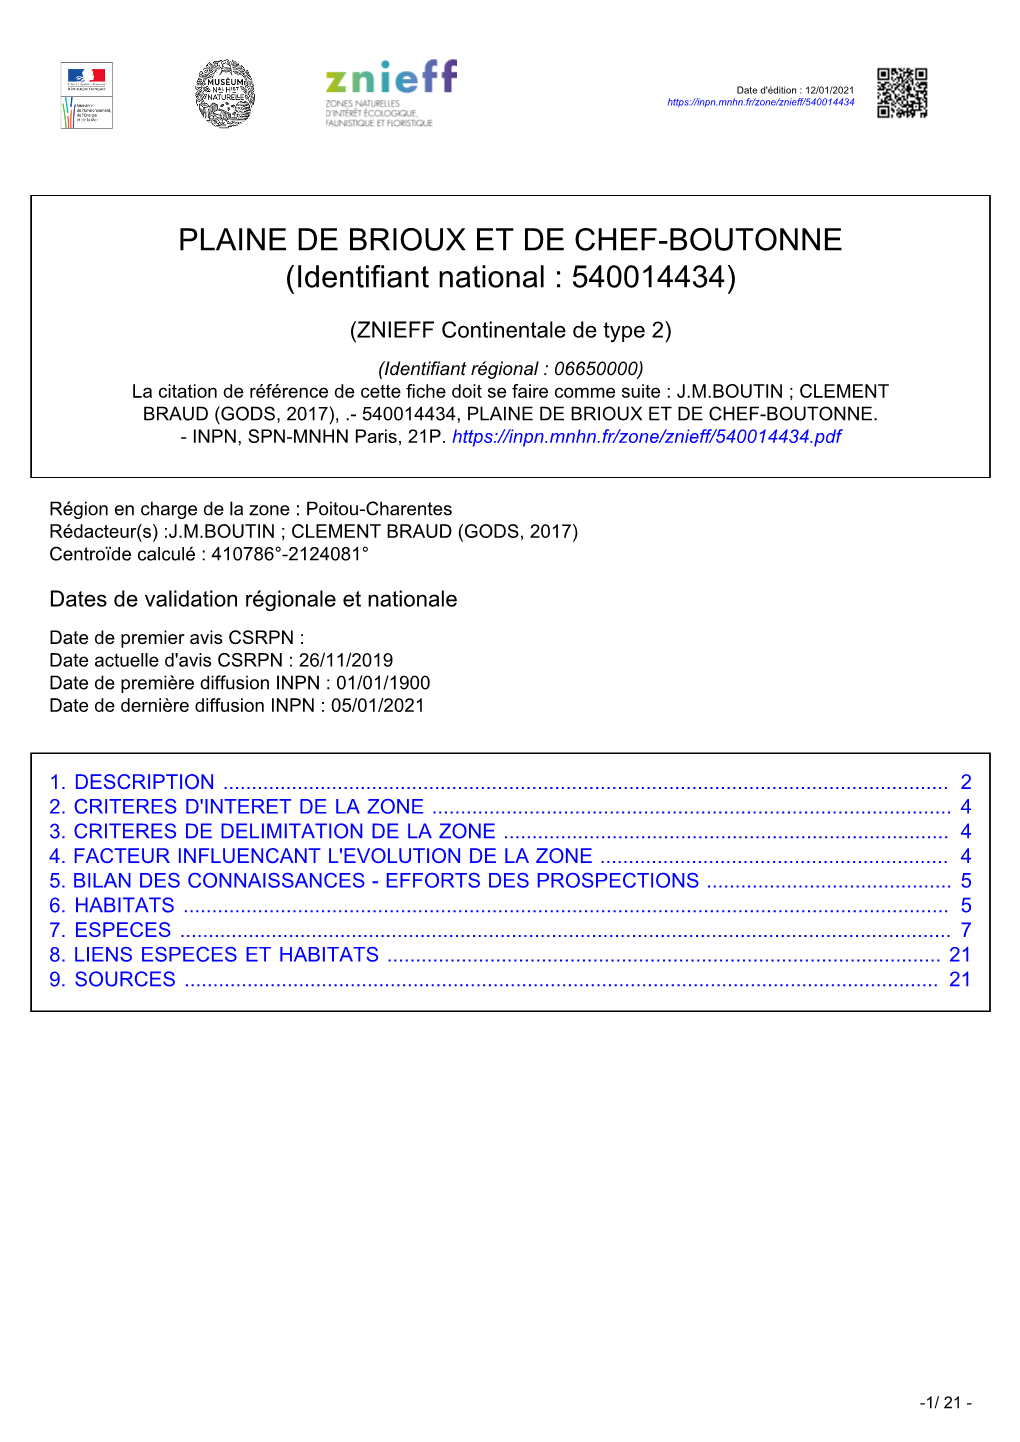 PLAINE DE BRIOUX ET DE CHEF-BOUTONNE (Identifiant National : 540014434)